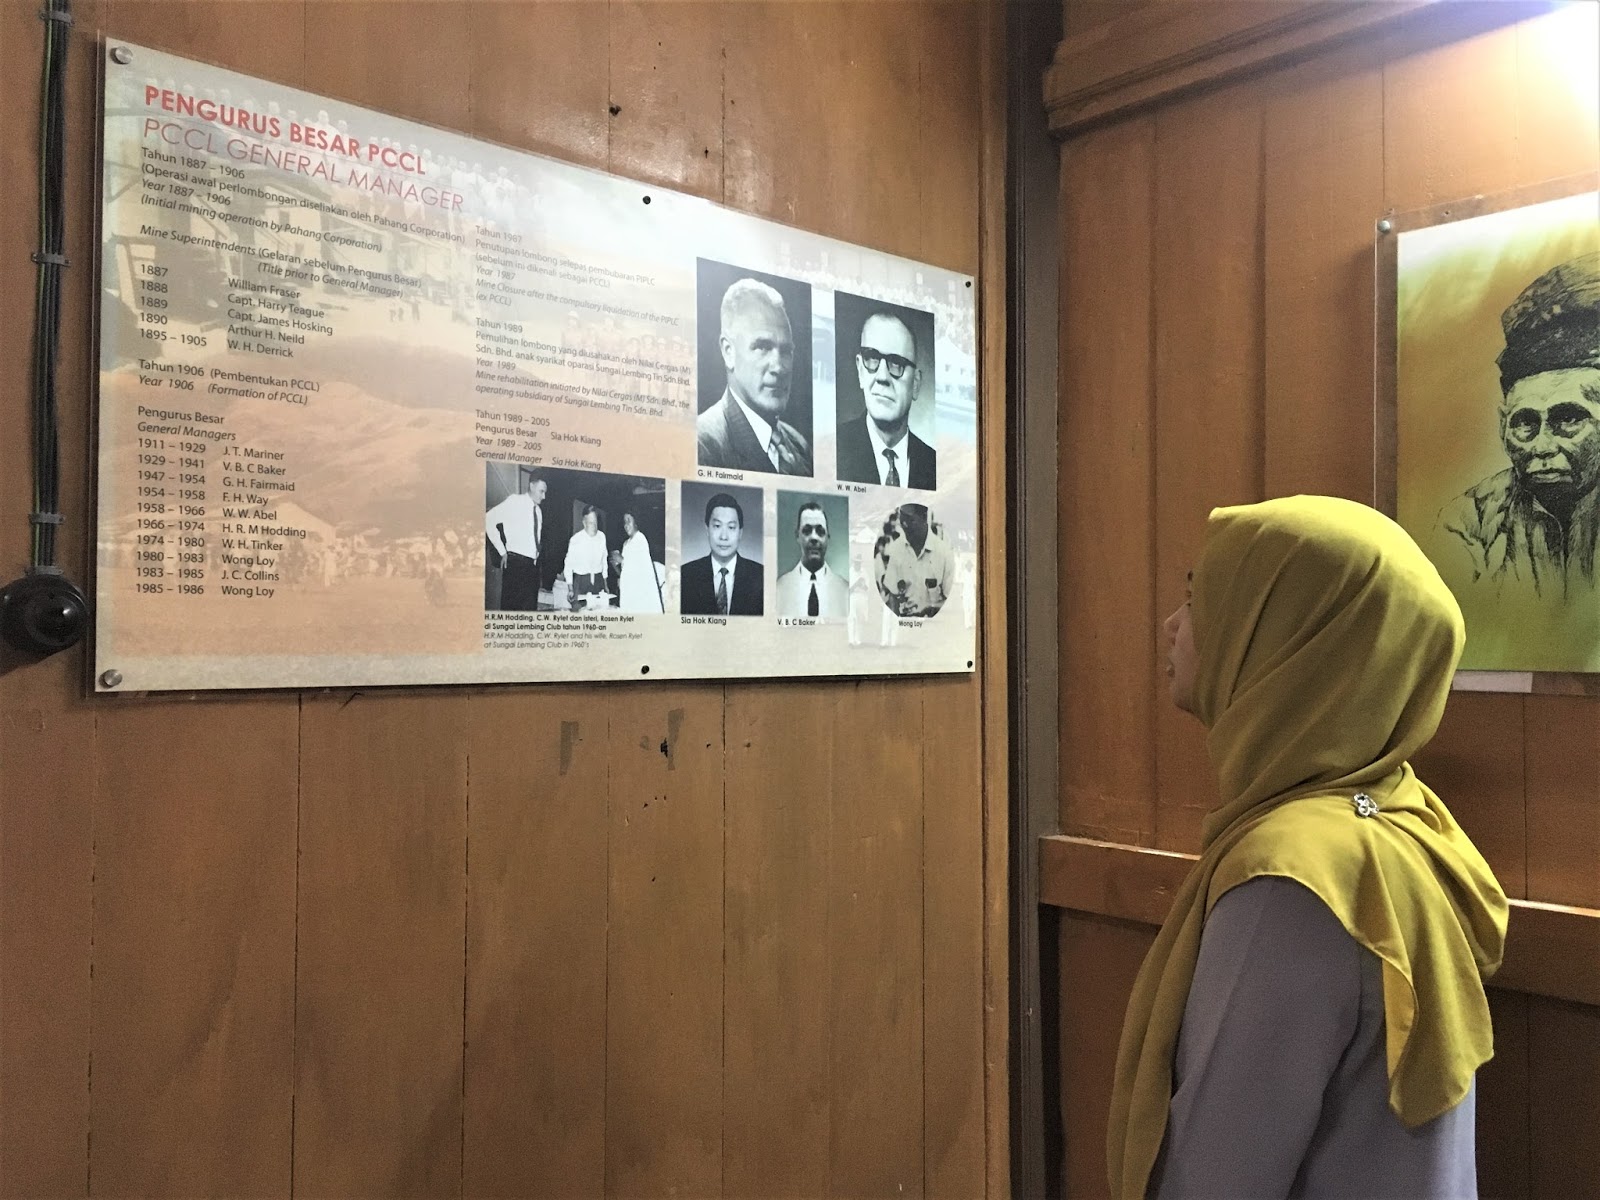 Menghayati Sejarah Zaman Kegemilangan Perlombongan Bijih Timah Di Muzium Sungai Lembing, Pahang